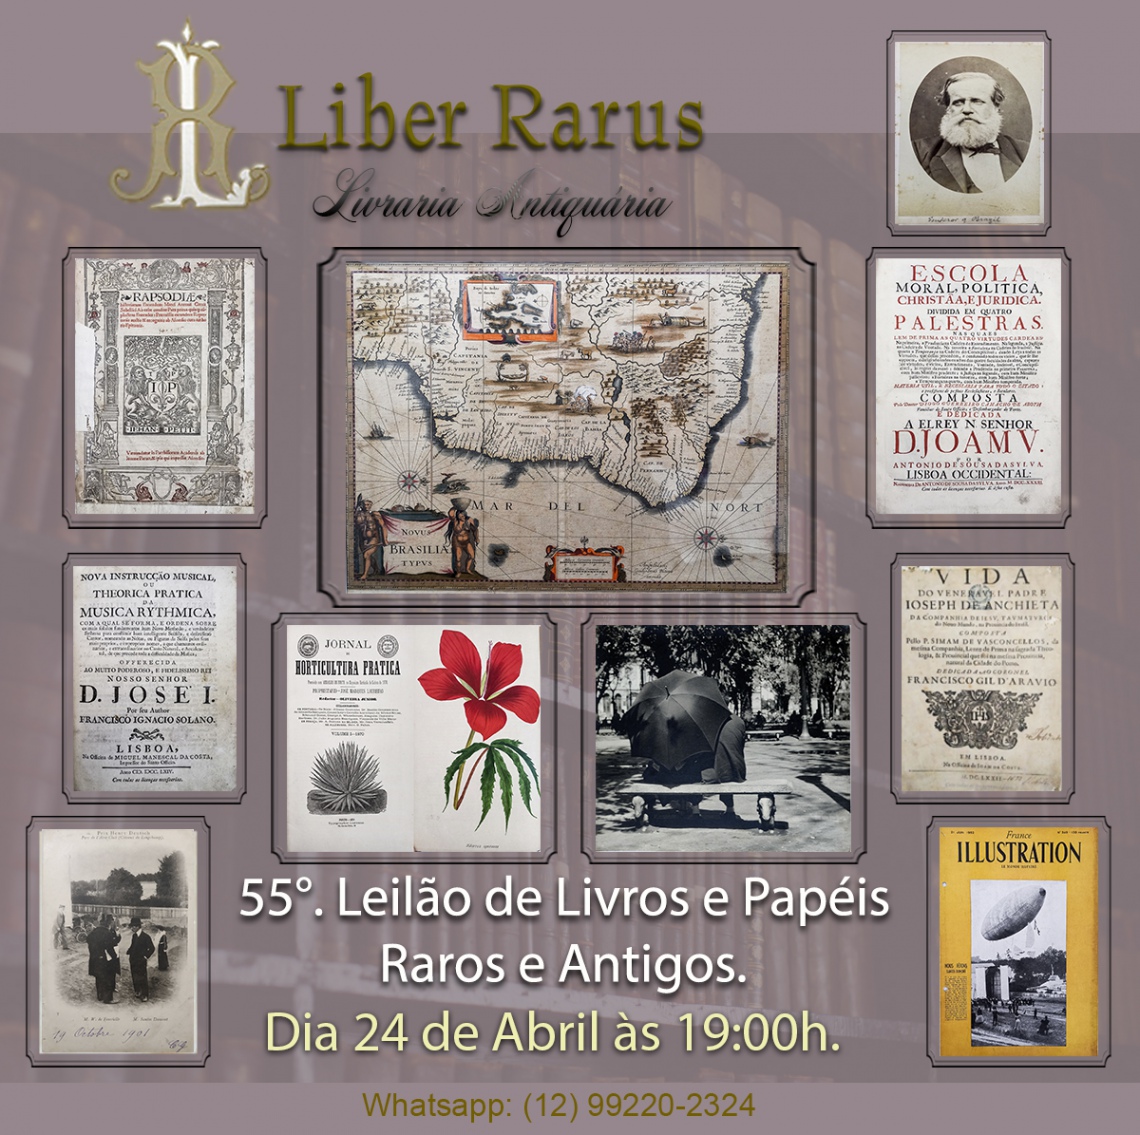 55º Leilão de Livros e Papéis Raros e Antigos - Liber Rarus